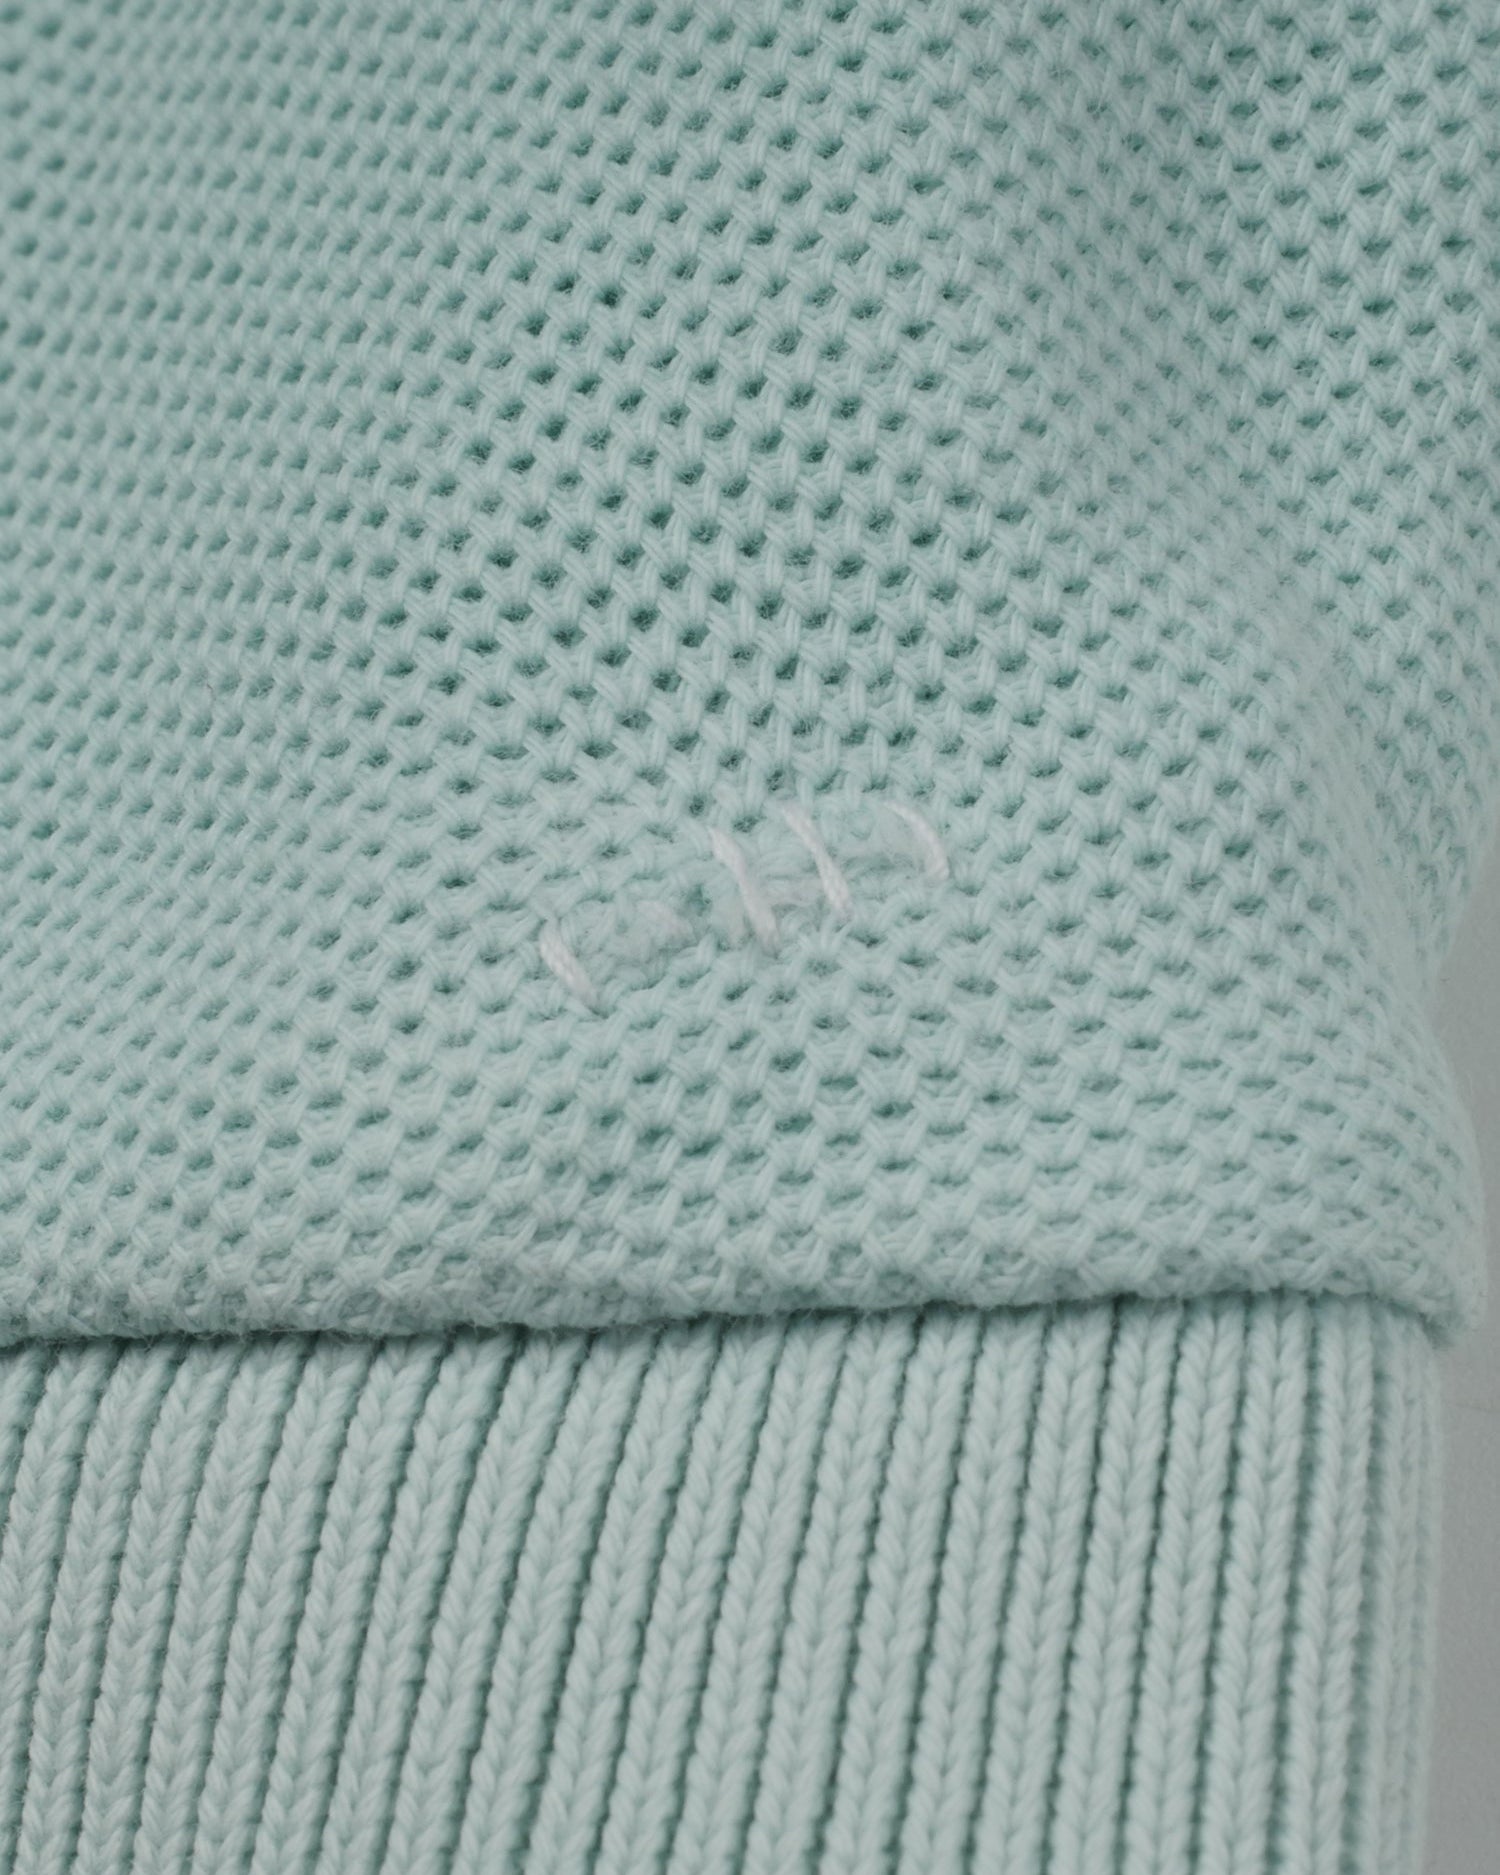 Fila grün Polo Shirt - Peeces